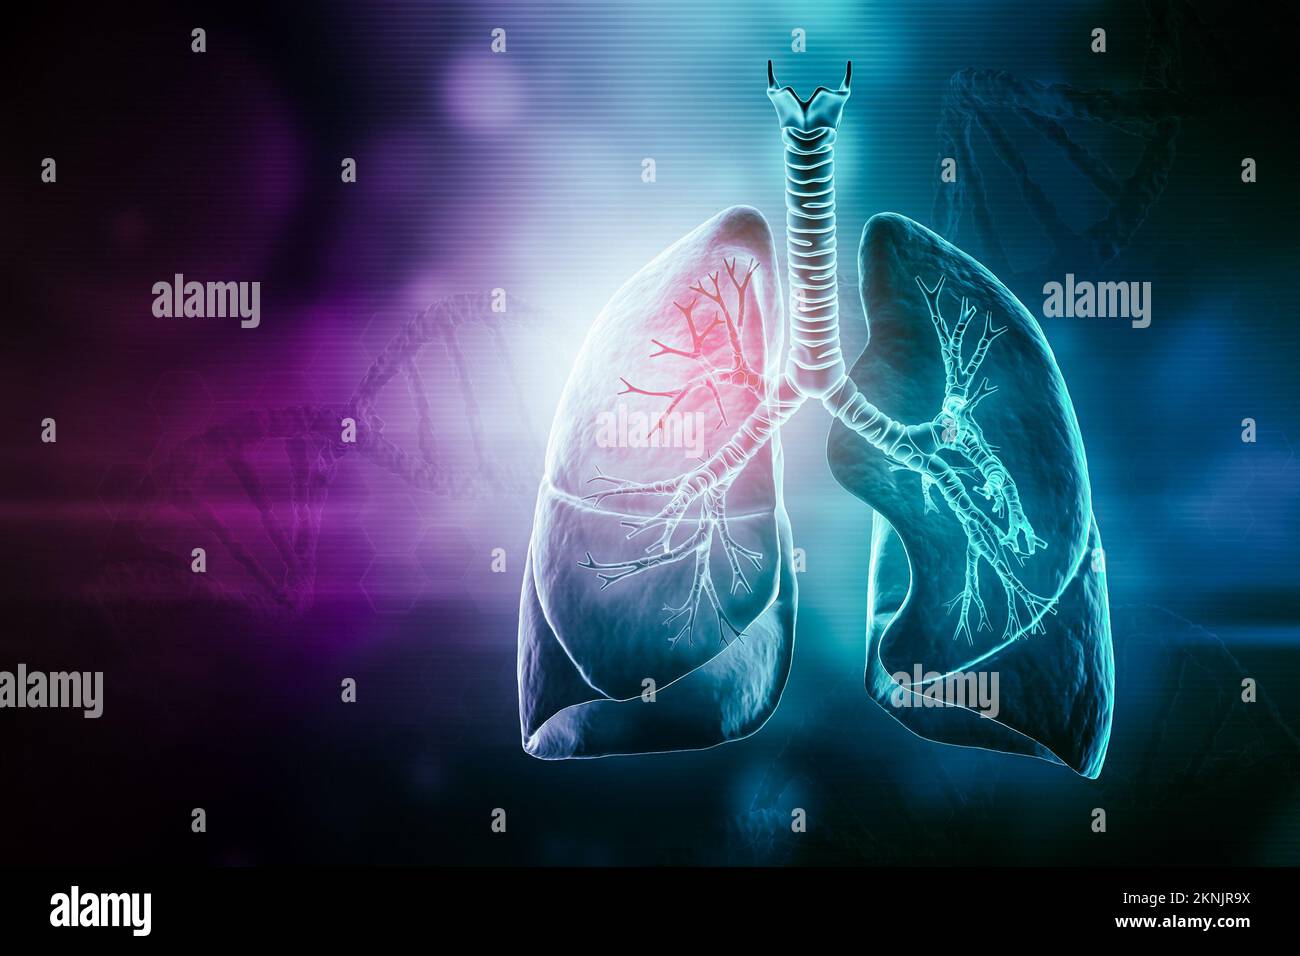 Polmoni umani con trachea e bronchi 3D che rendono l'illustrazione con spazio di copia. Concetti di anatomia, medicina e sanità, biologia, medicina, scienza. Foto Stock